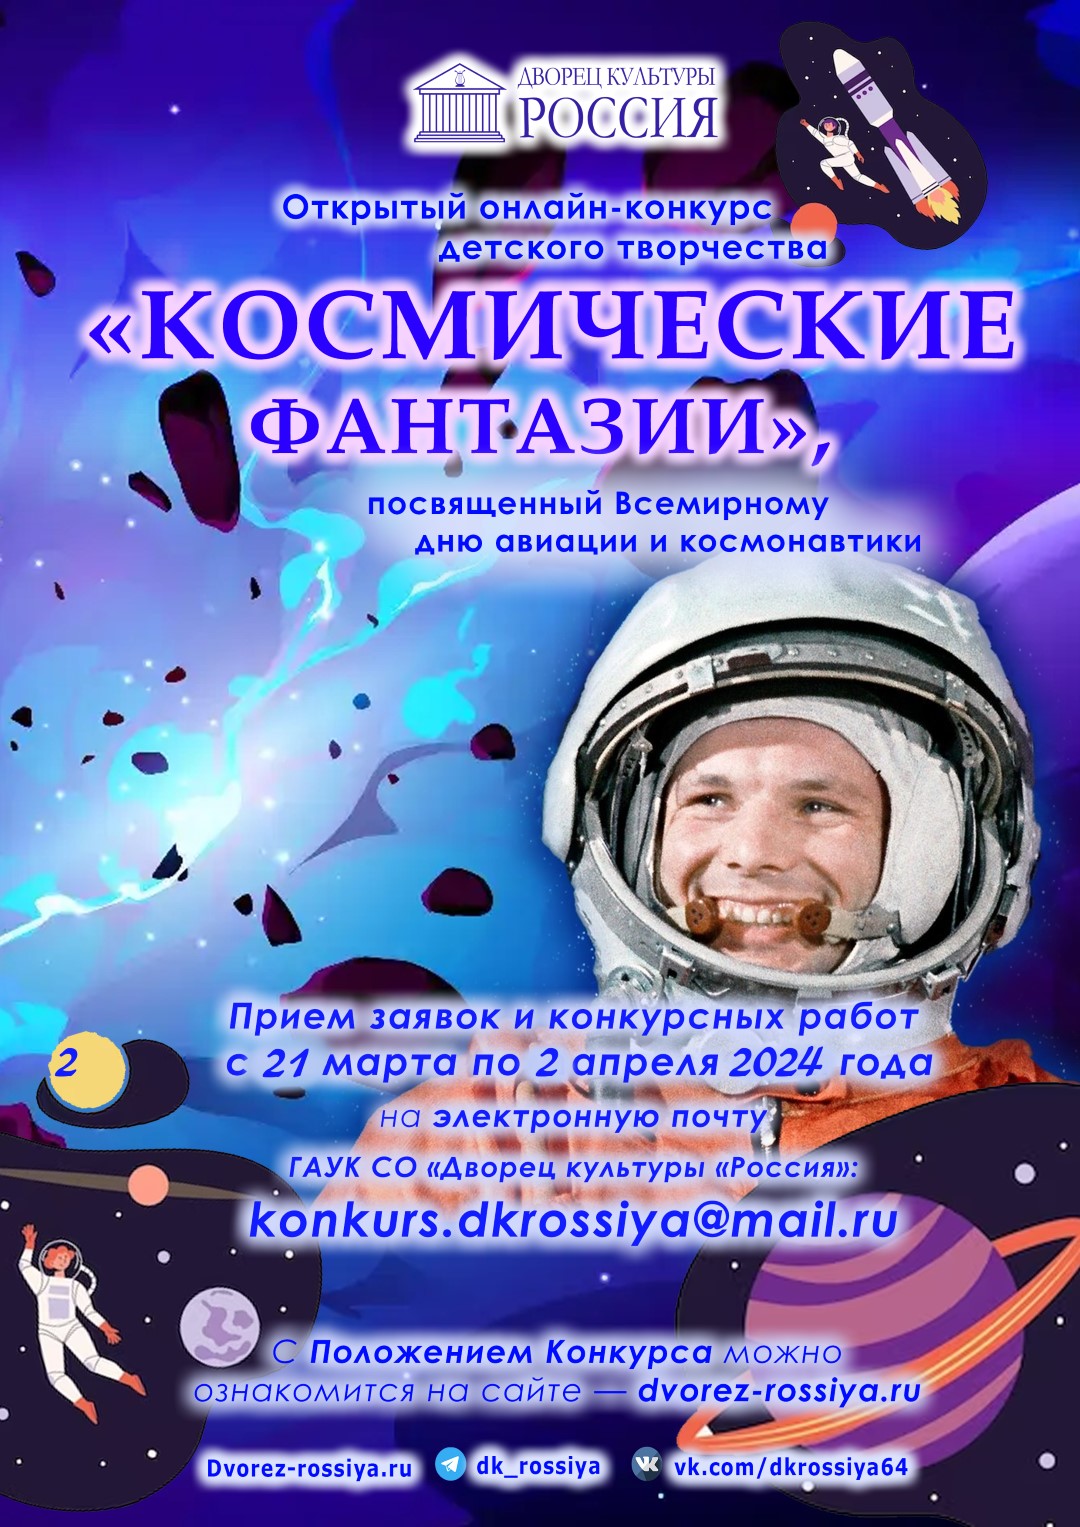 Открытый онлайн–конкурс детского творчества «Космические фантазии», посвященный Всемирному дню авиации и космонавтики